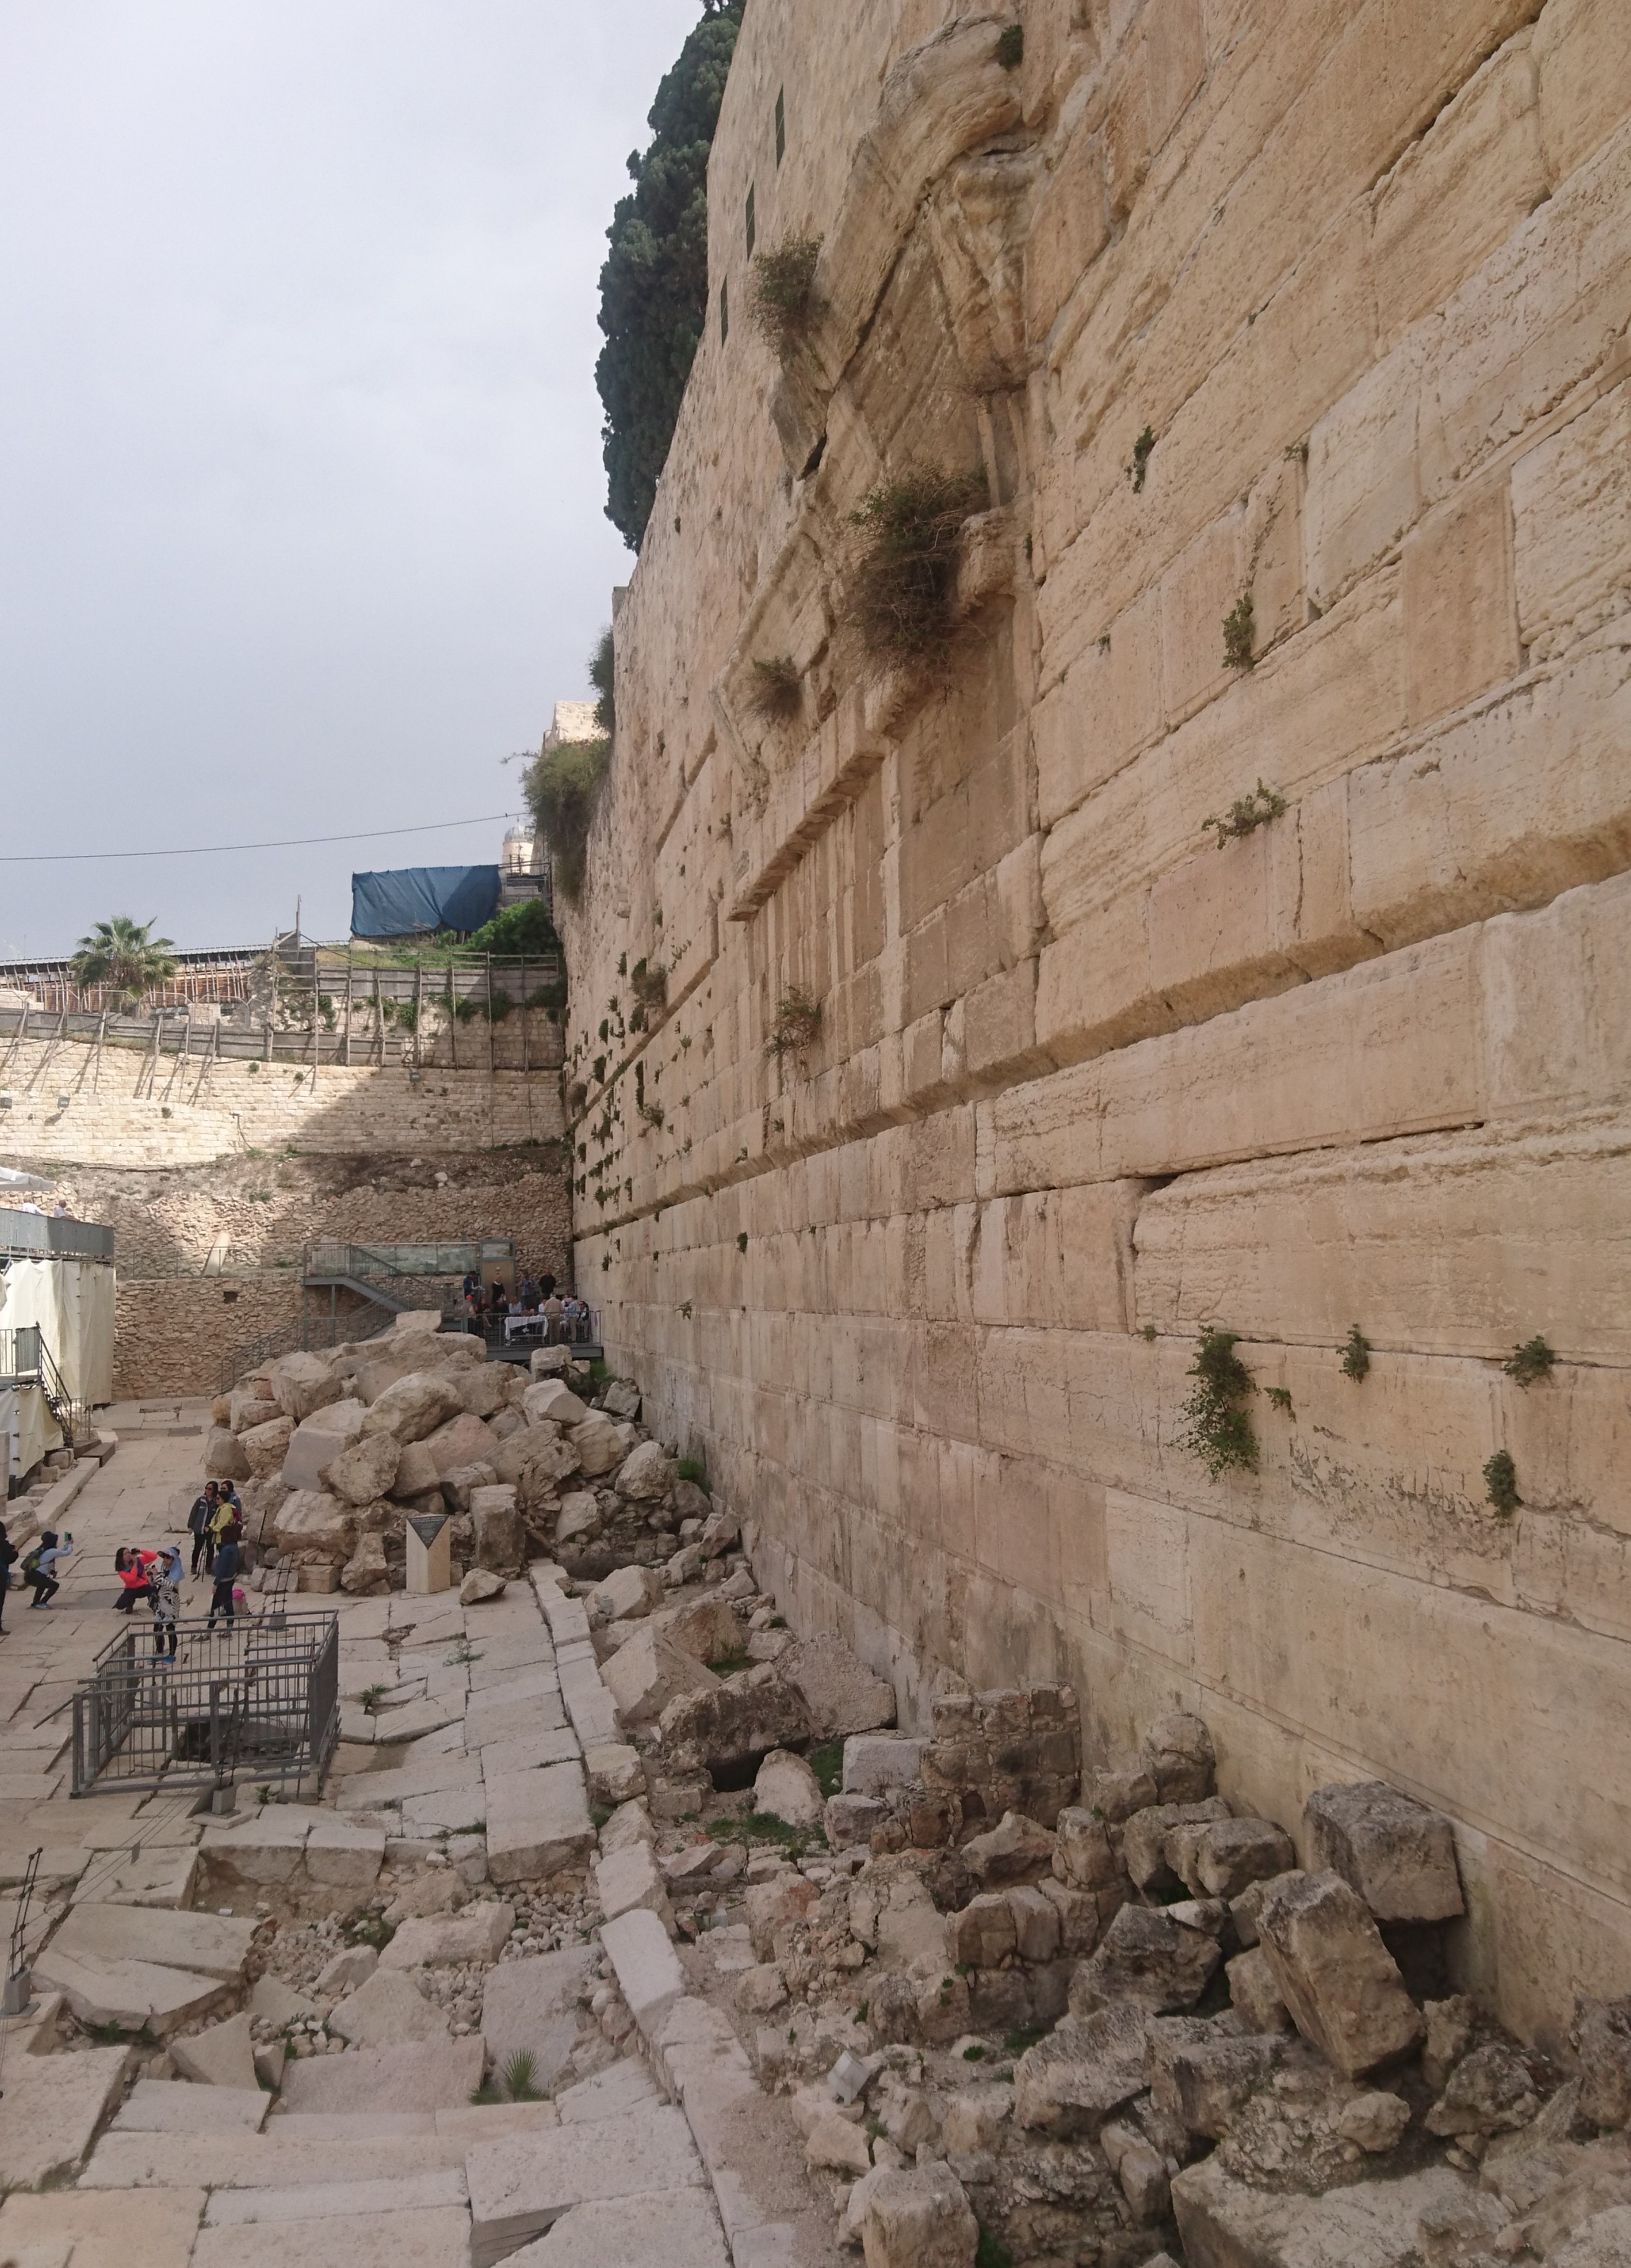 耶路撒冷已倒下的聖殿石塊 - 複製